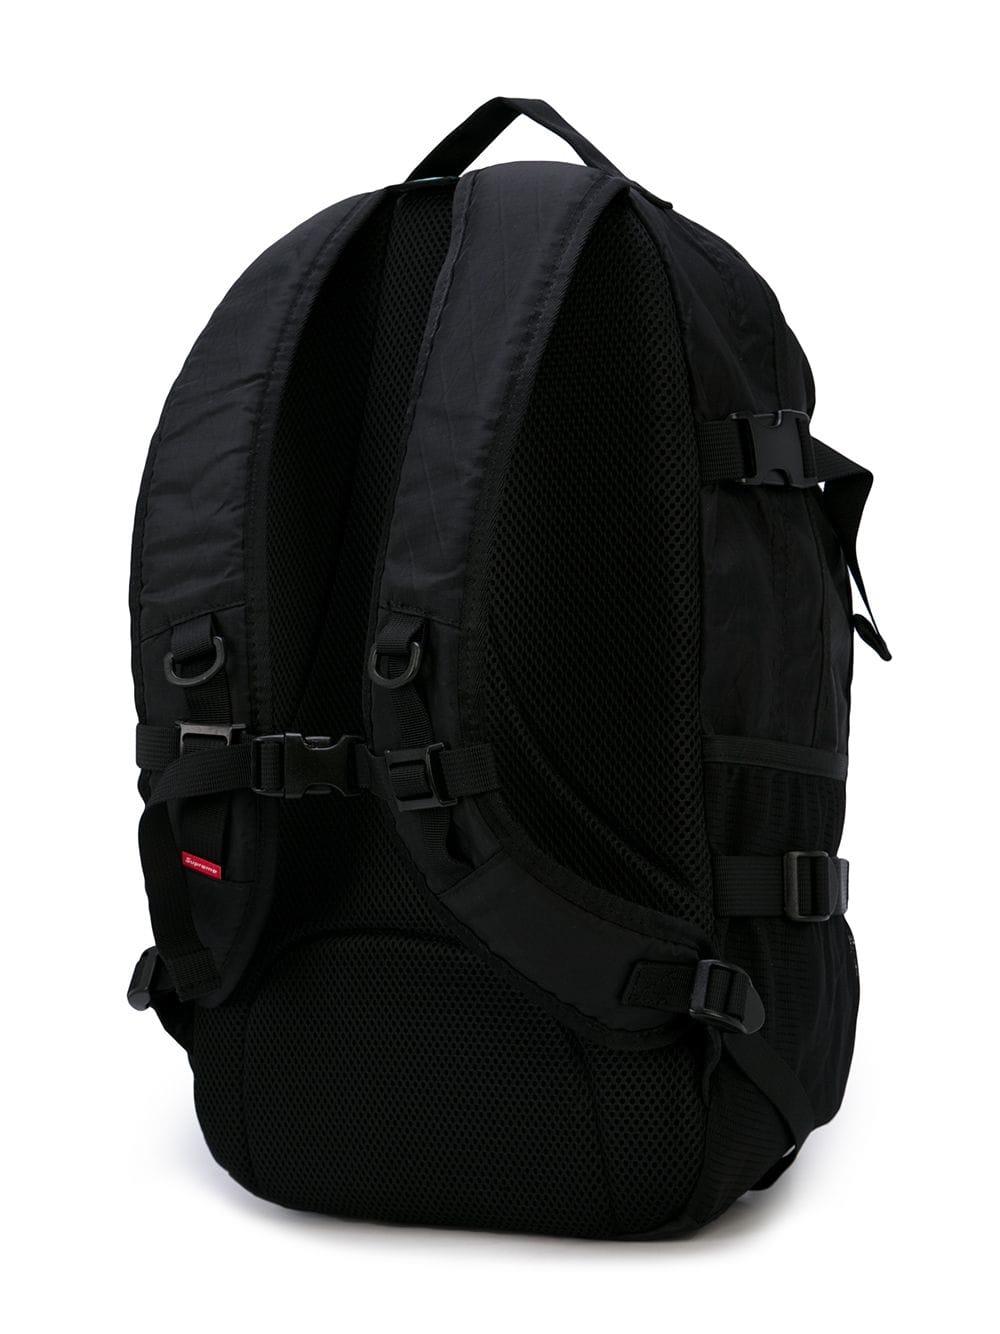 Supreme Backpack 'fw 18' in Black for Men | Lyst